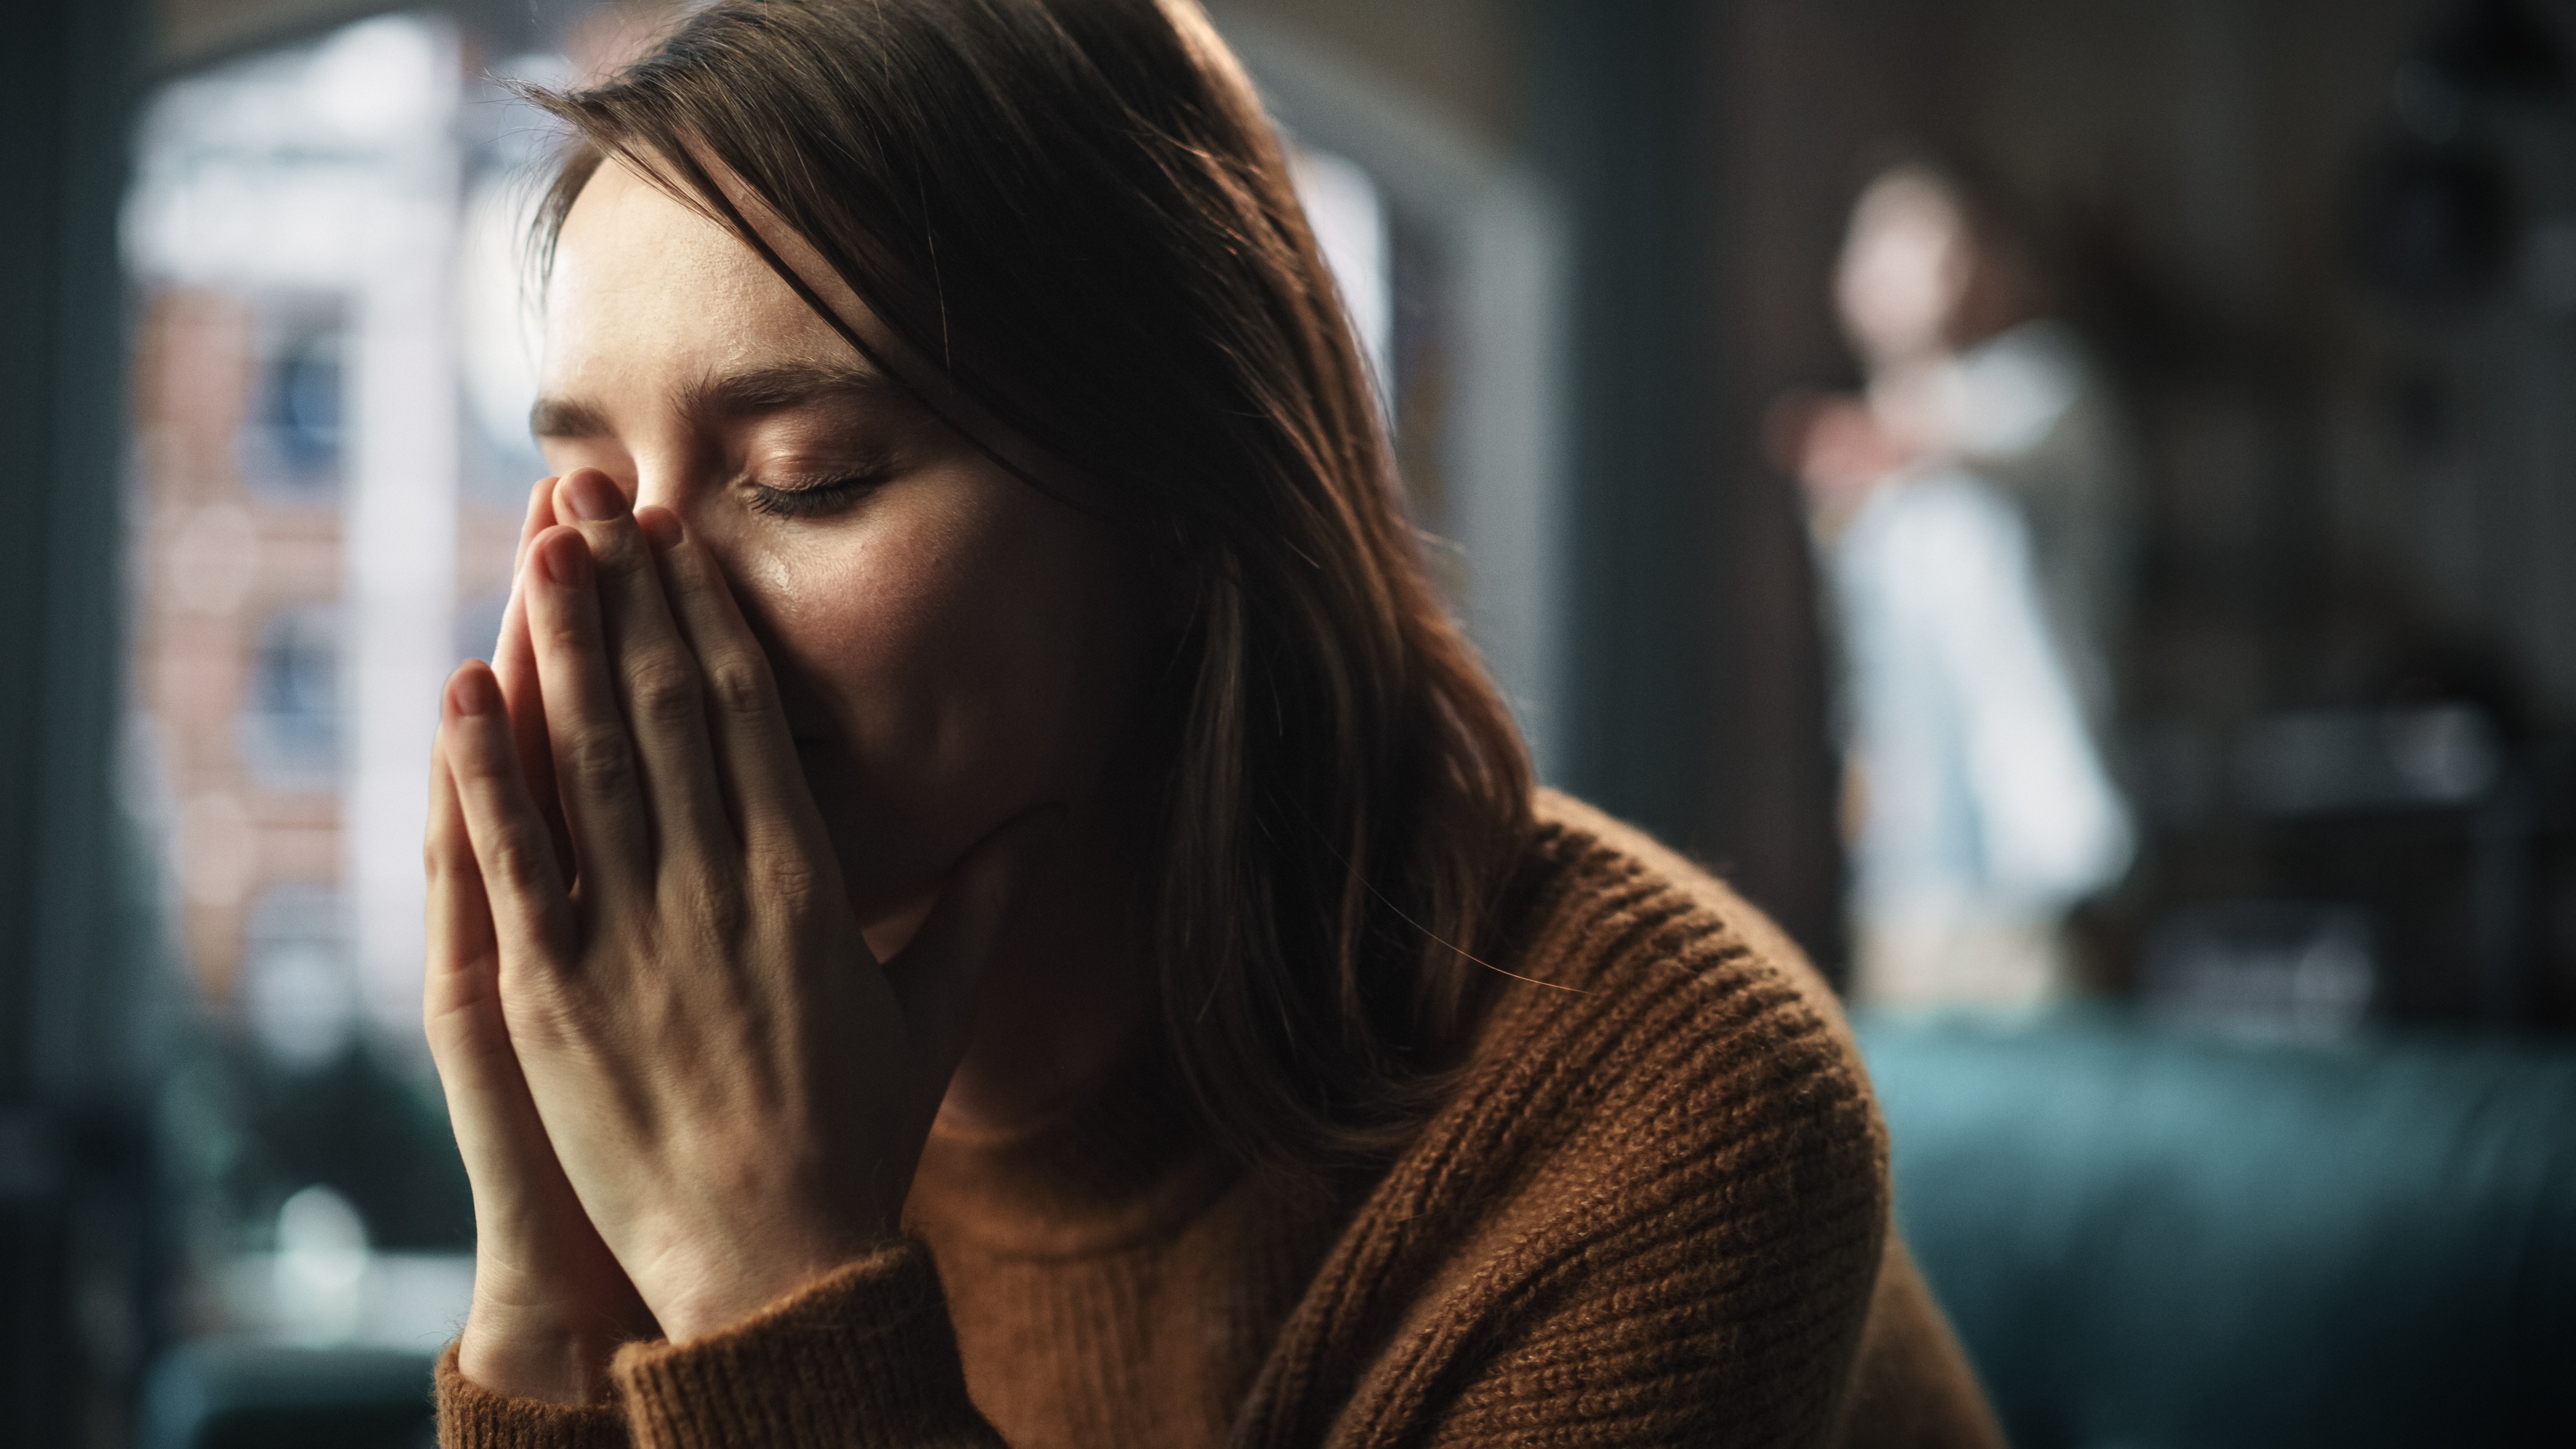 Eine traurige und emotionale junge Frau | Quelle: Shutterstock